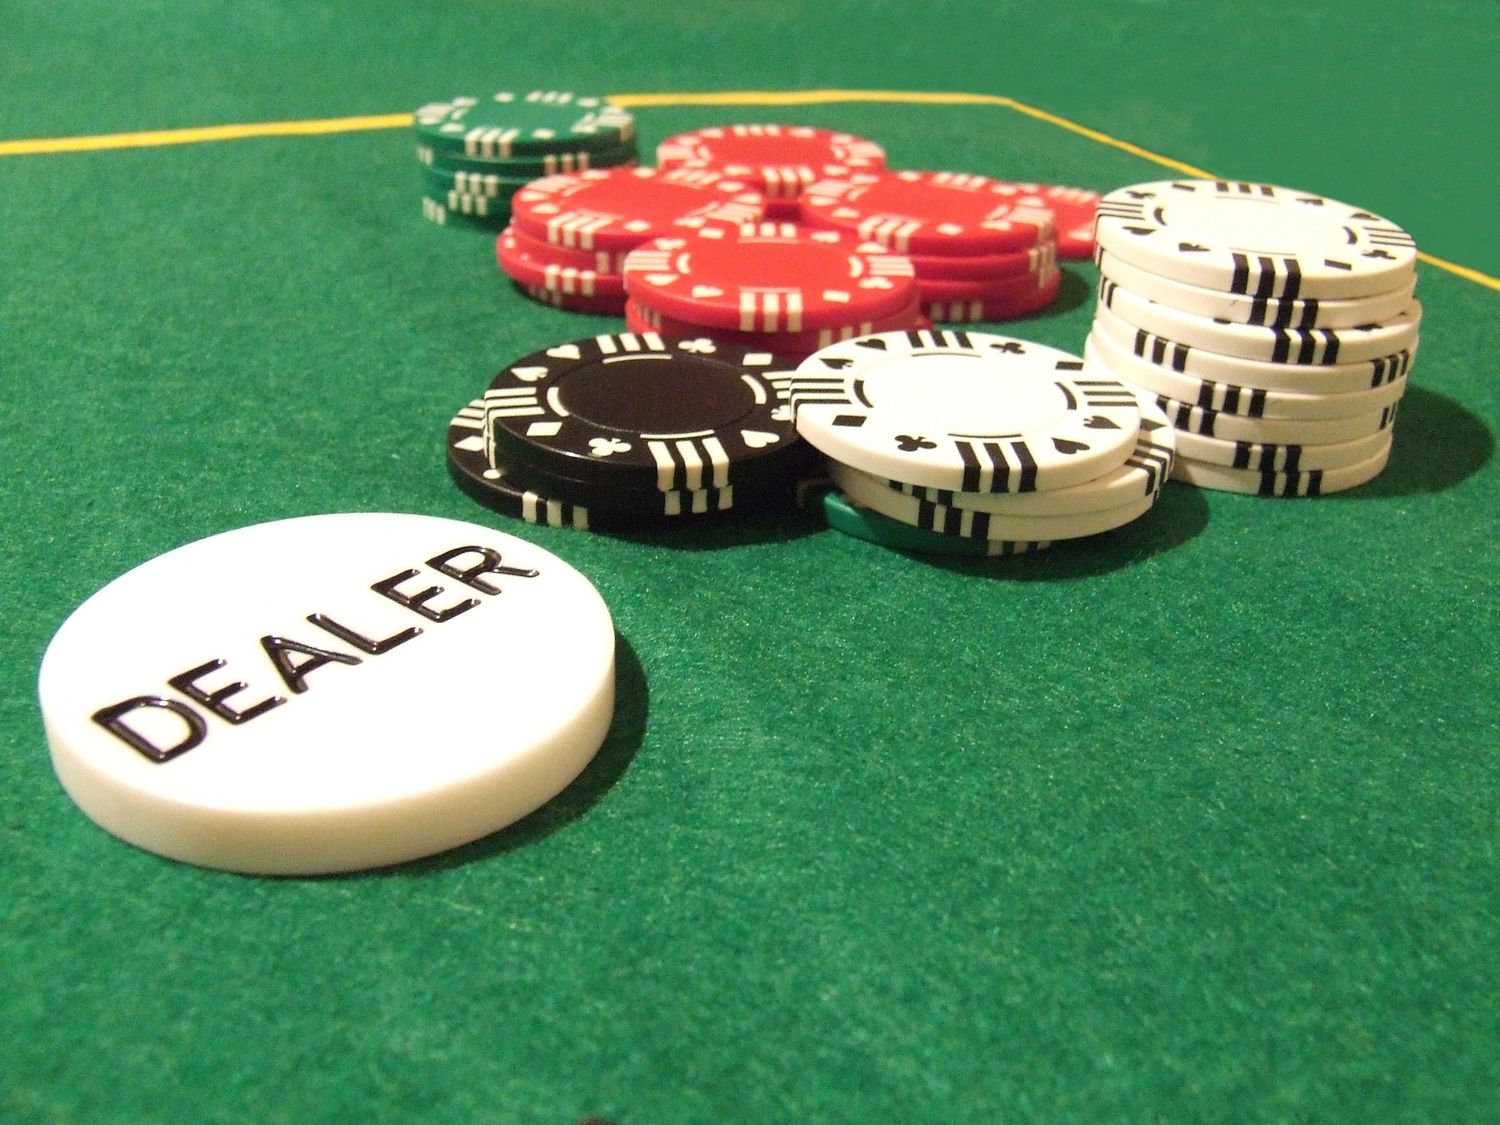 Bezdepozitni bonus poker ют